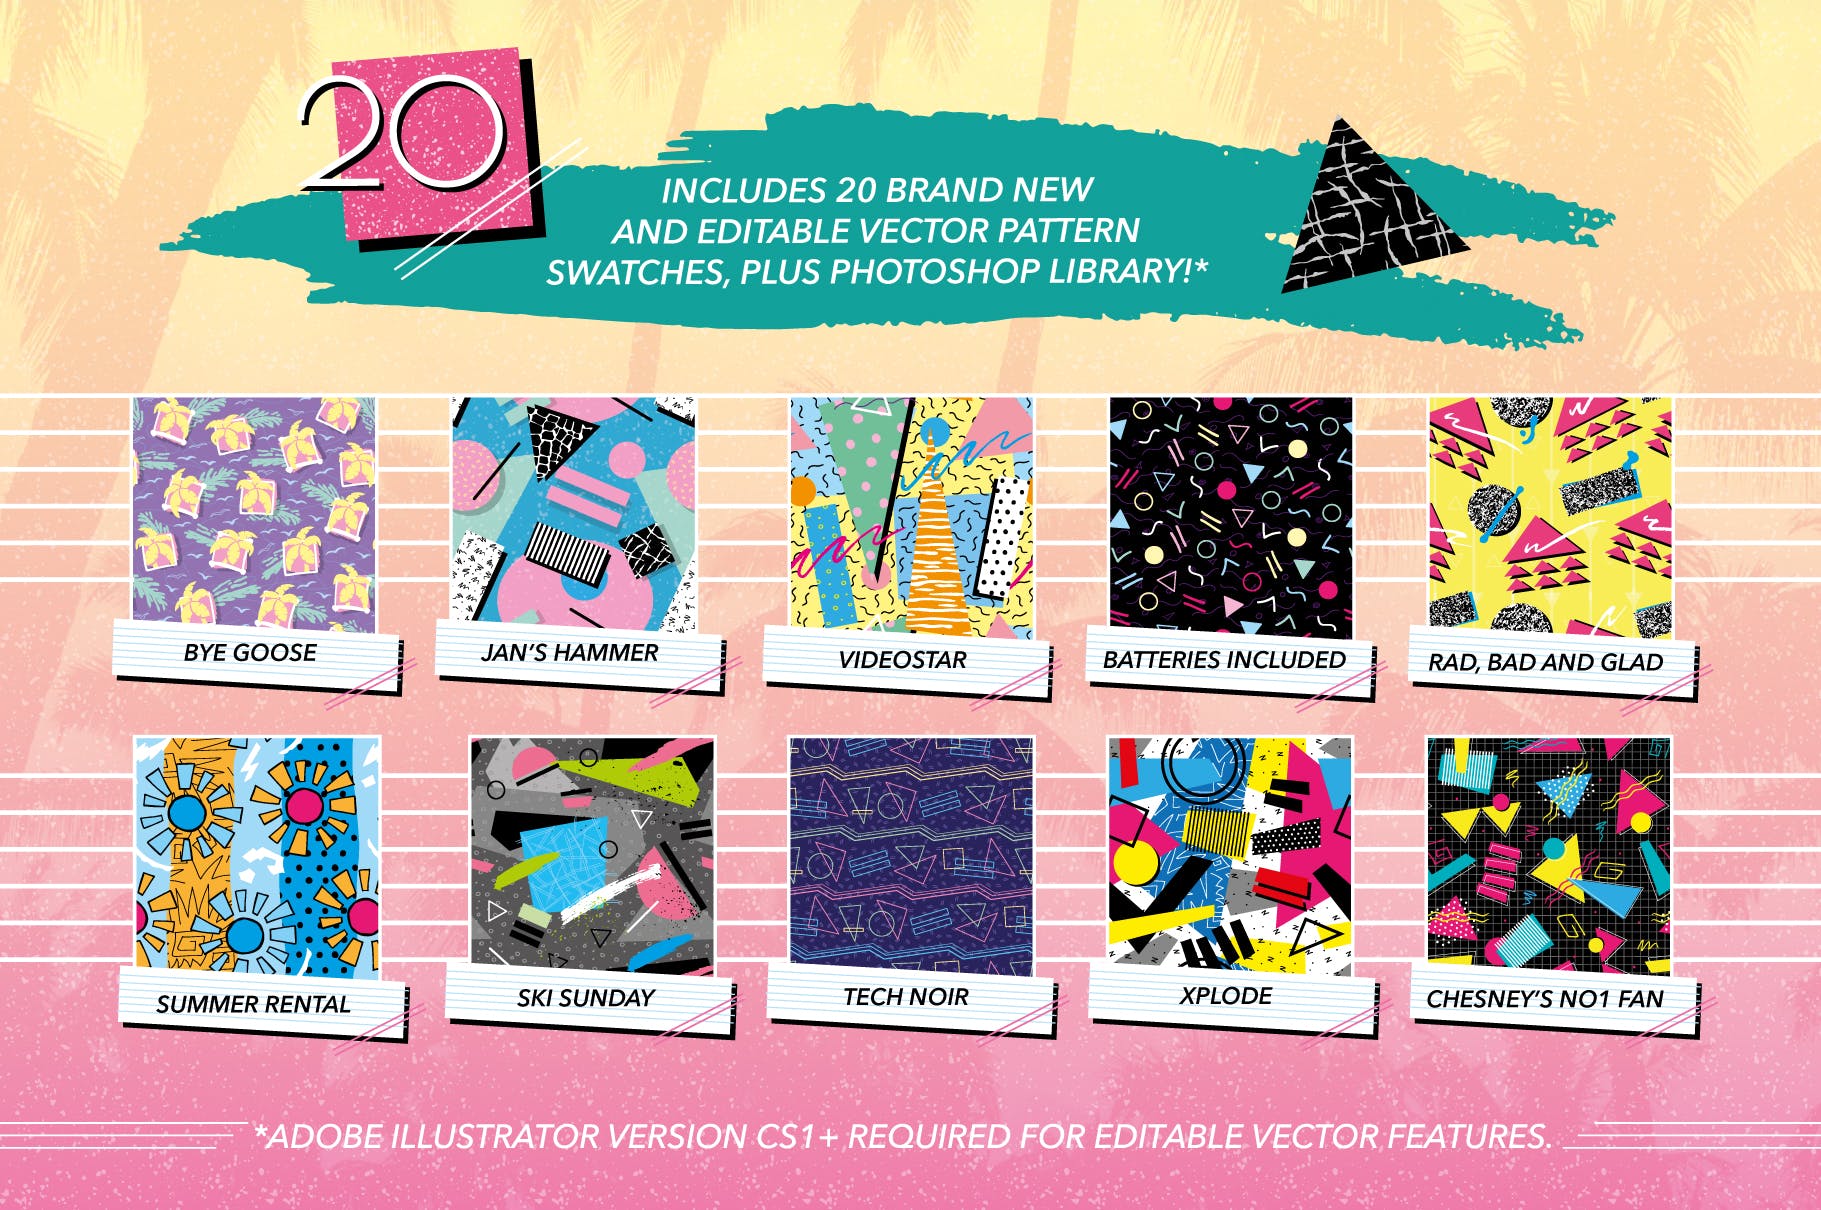 复刻欧美1980s年代设计风格图案背景素材天下精选v2 1980s Retro Patterns Volume Two插图(1)